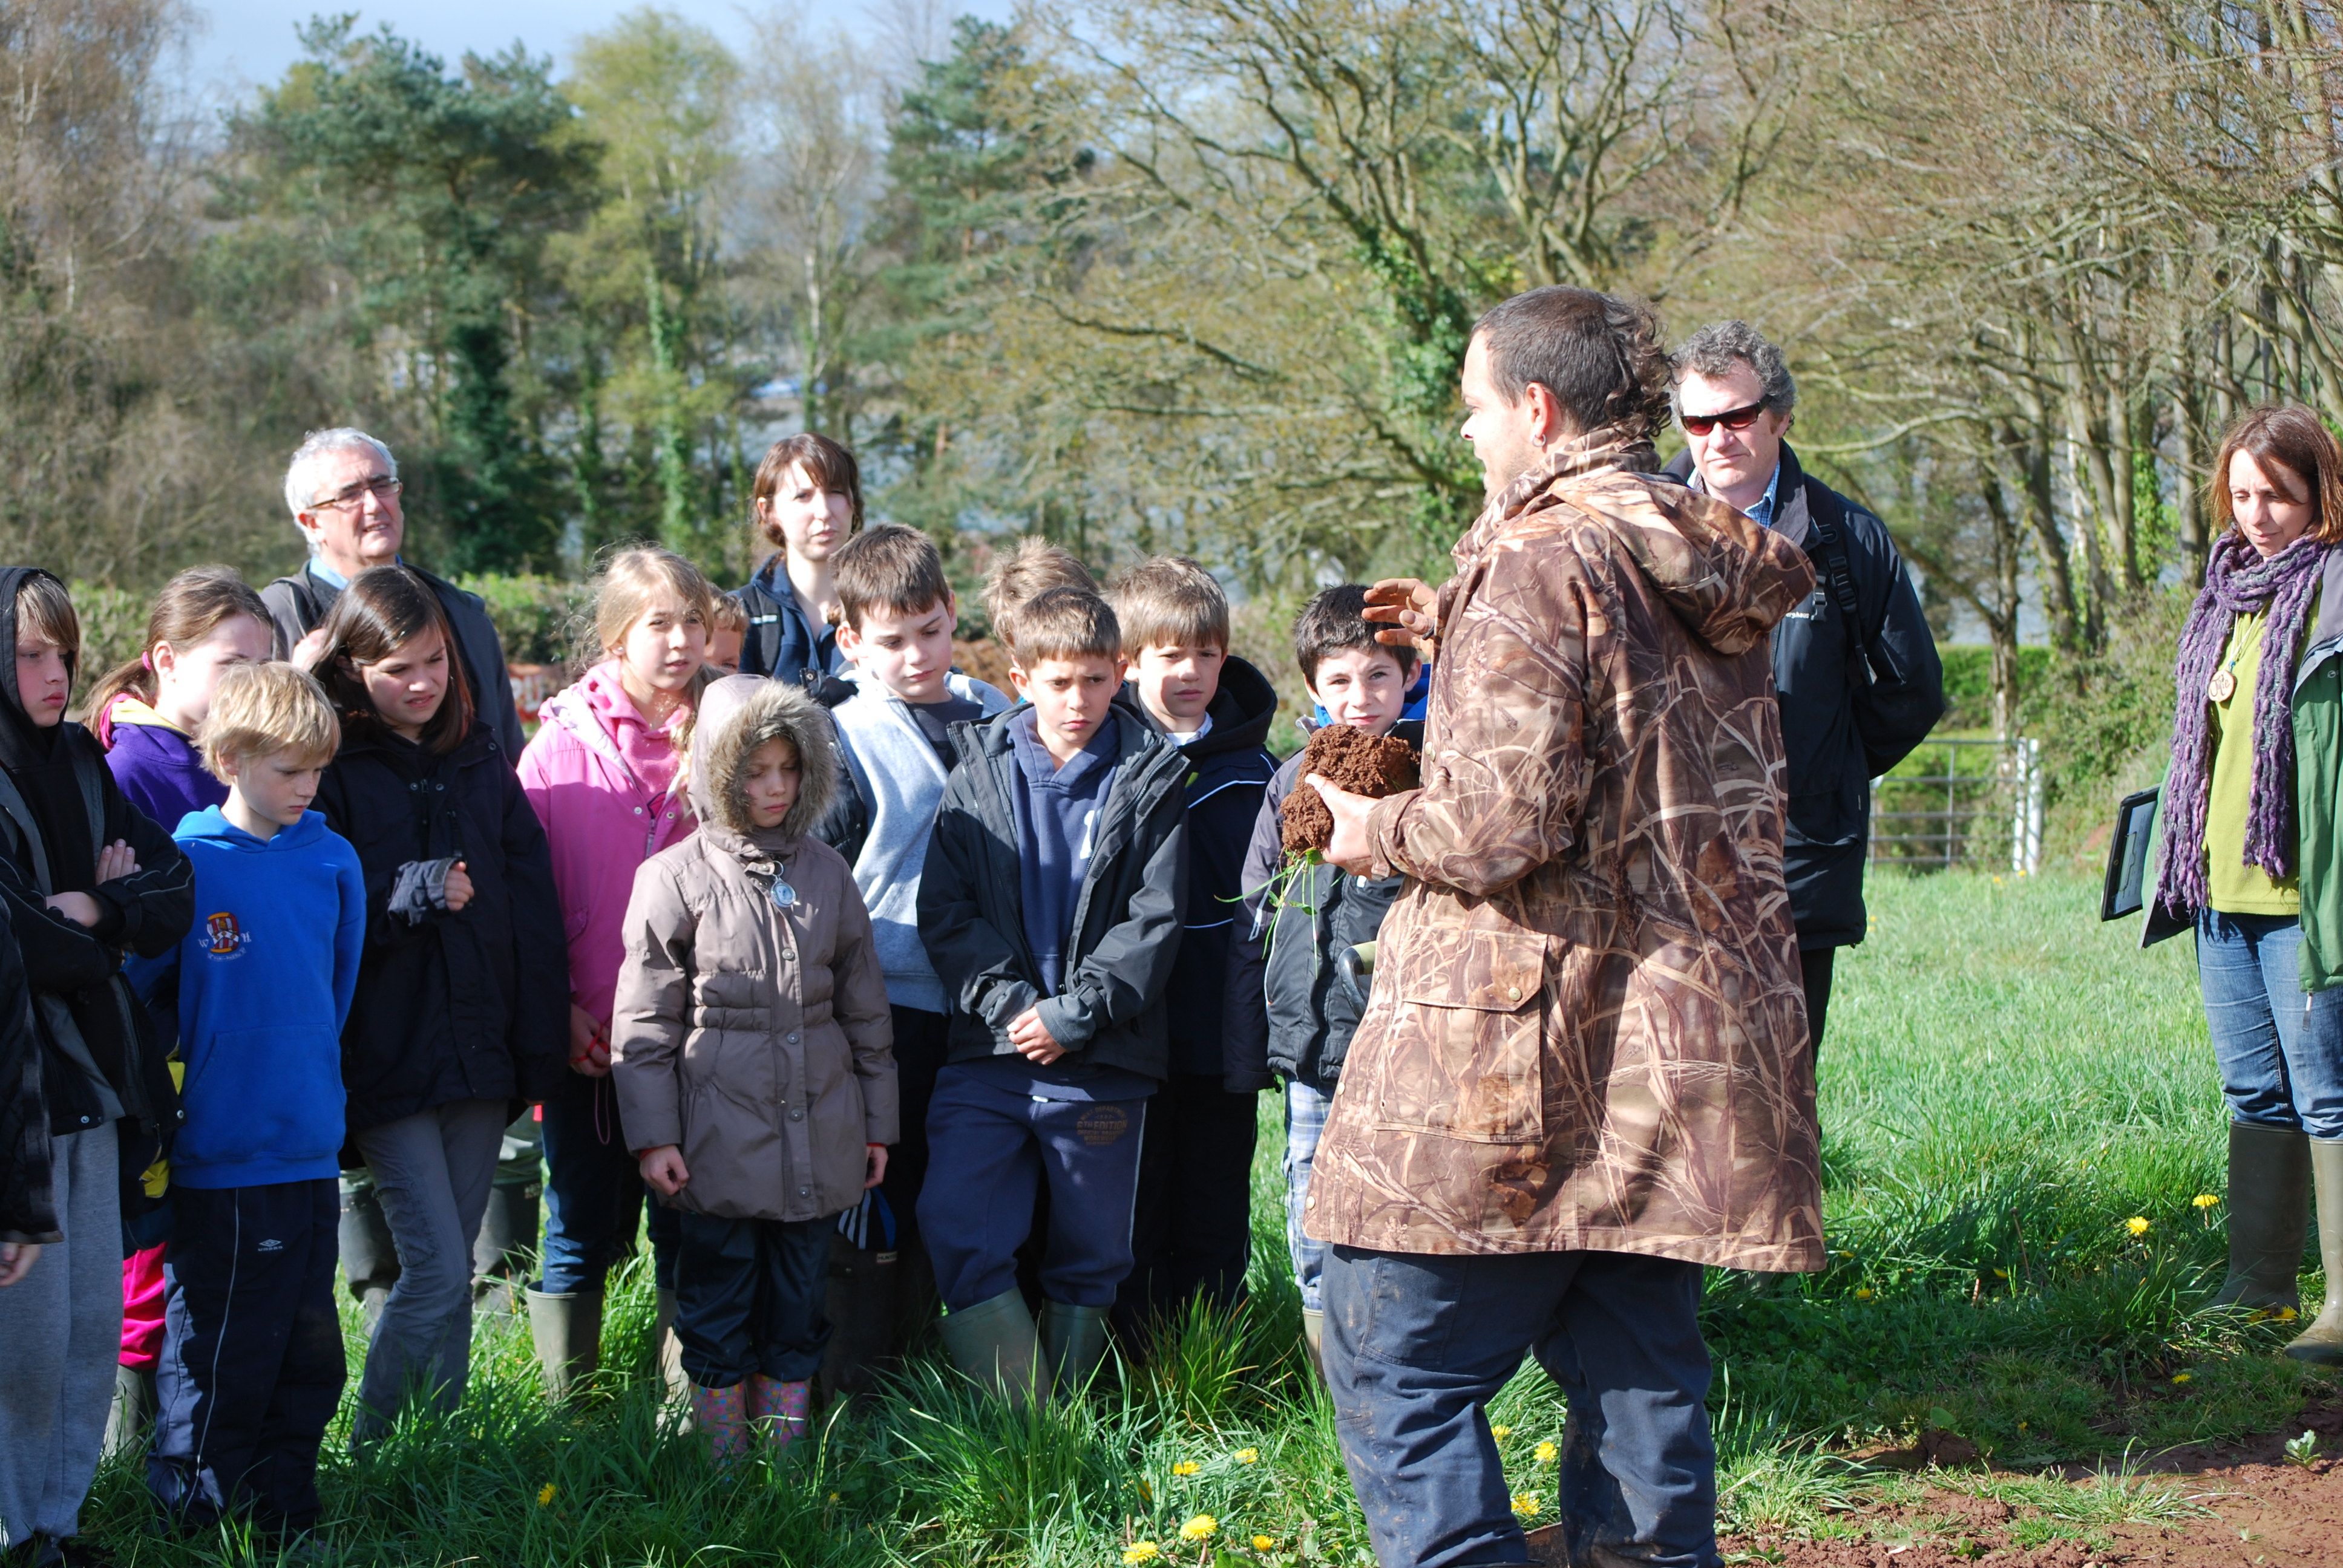 Bishop Sutton Primary School visit the farm